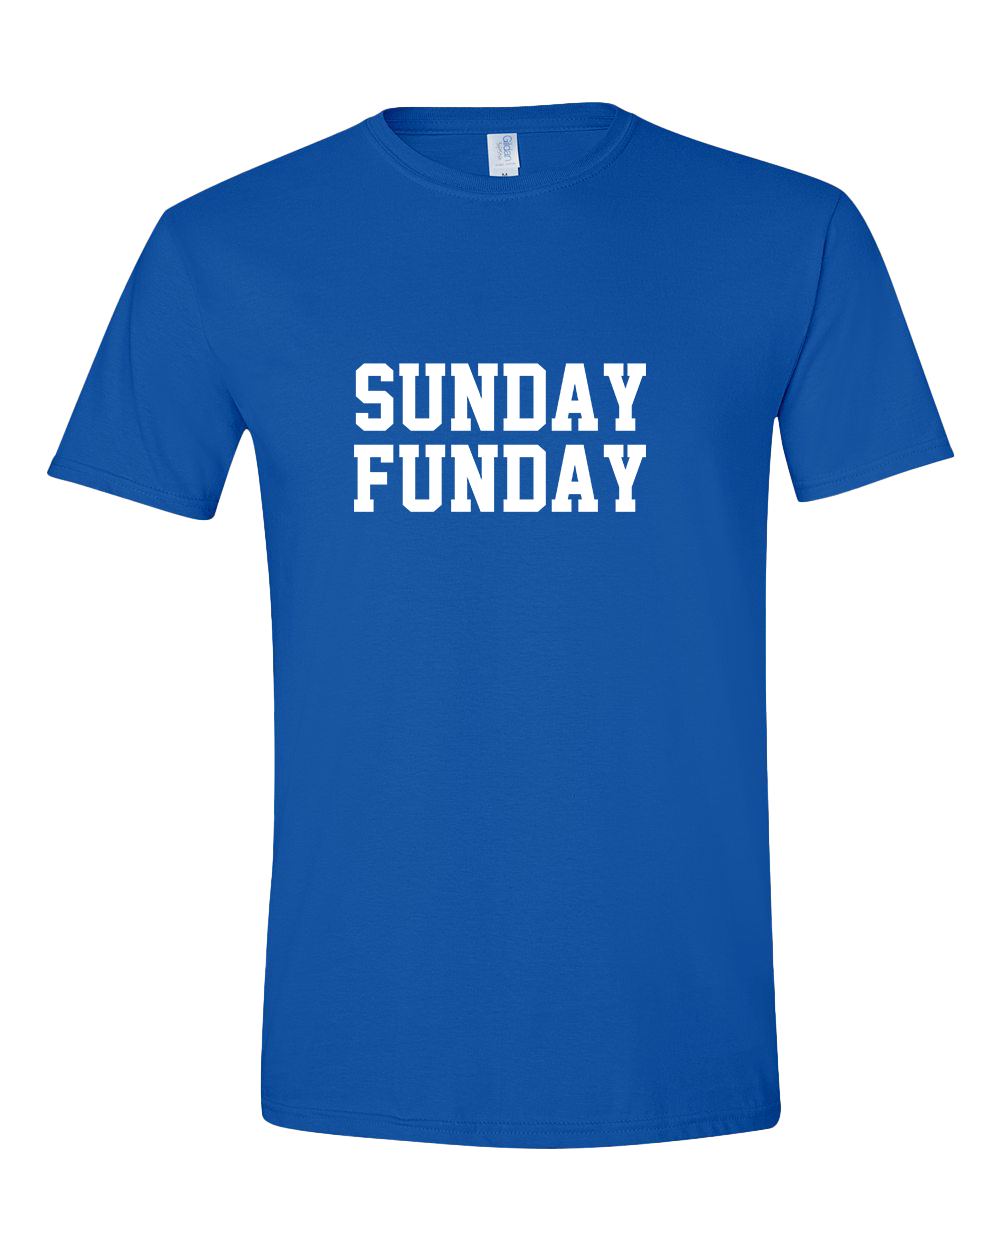 Sunday Funday tshirt - Royal